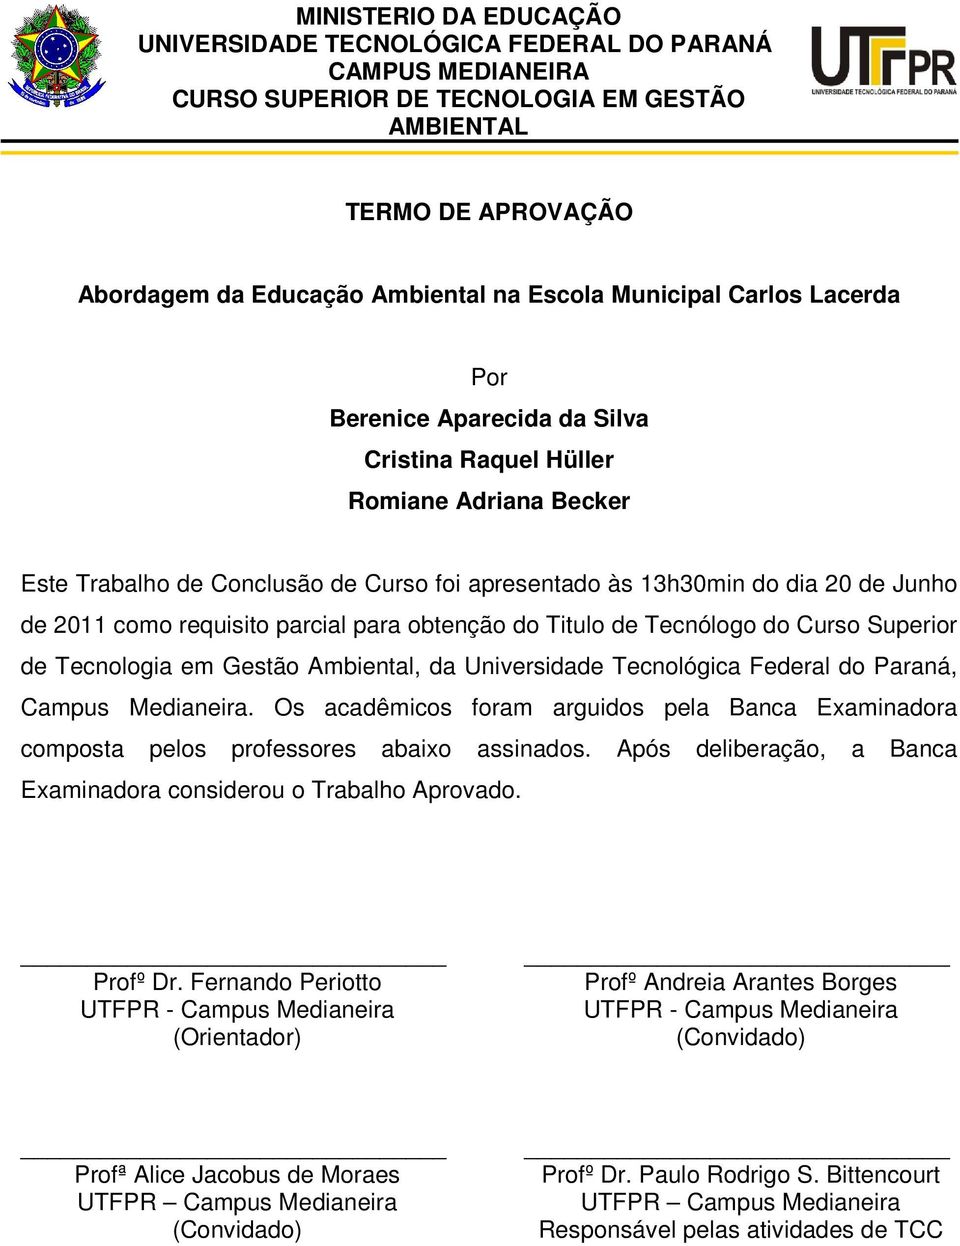 requisito parcial para obtenção do Titulo de Tecnólogo do Curso Superior de Tecnologia em Gestão Ambiental, da Universidade Tecnológica Federal do Paraná, Campus Medianeira.